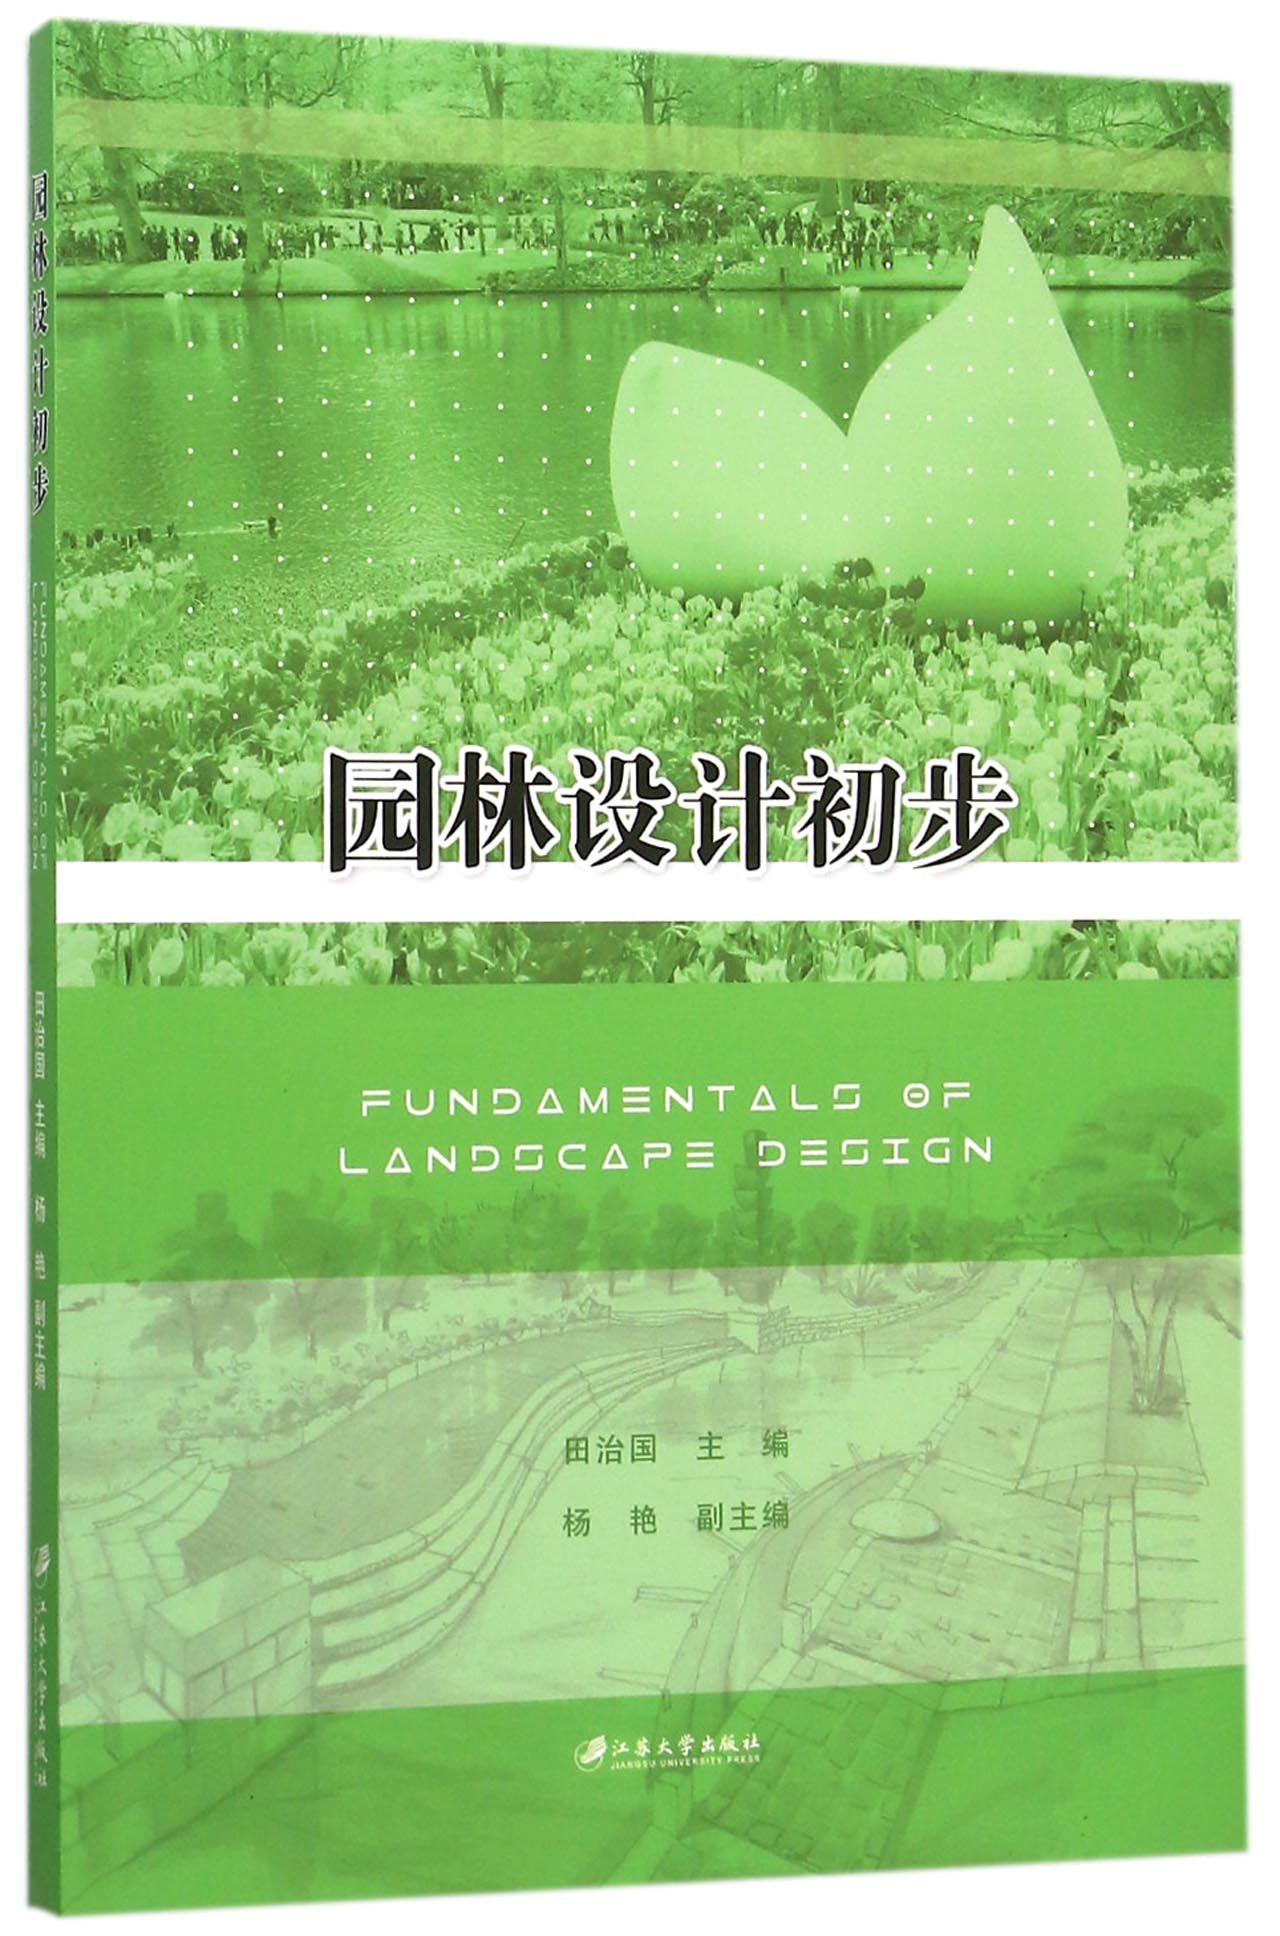 園林設計初步(江蘇大學出版社出版的圖書)